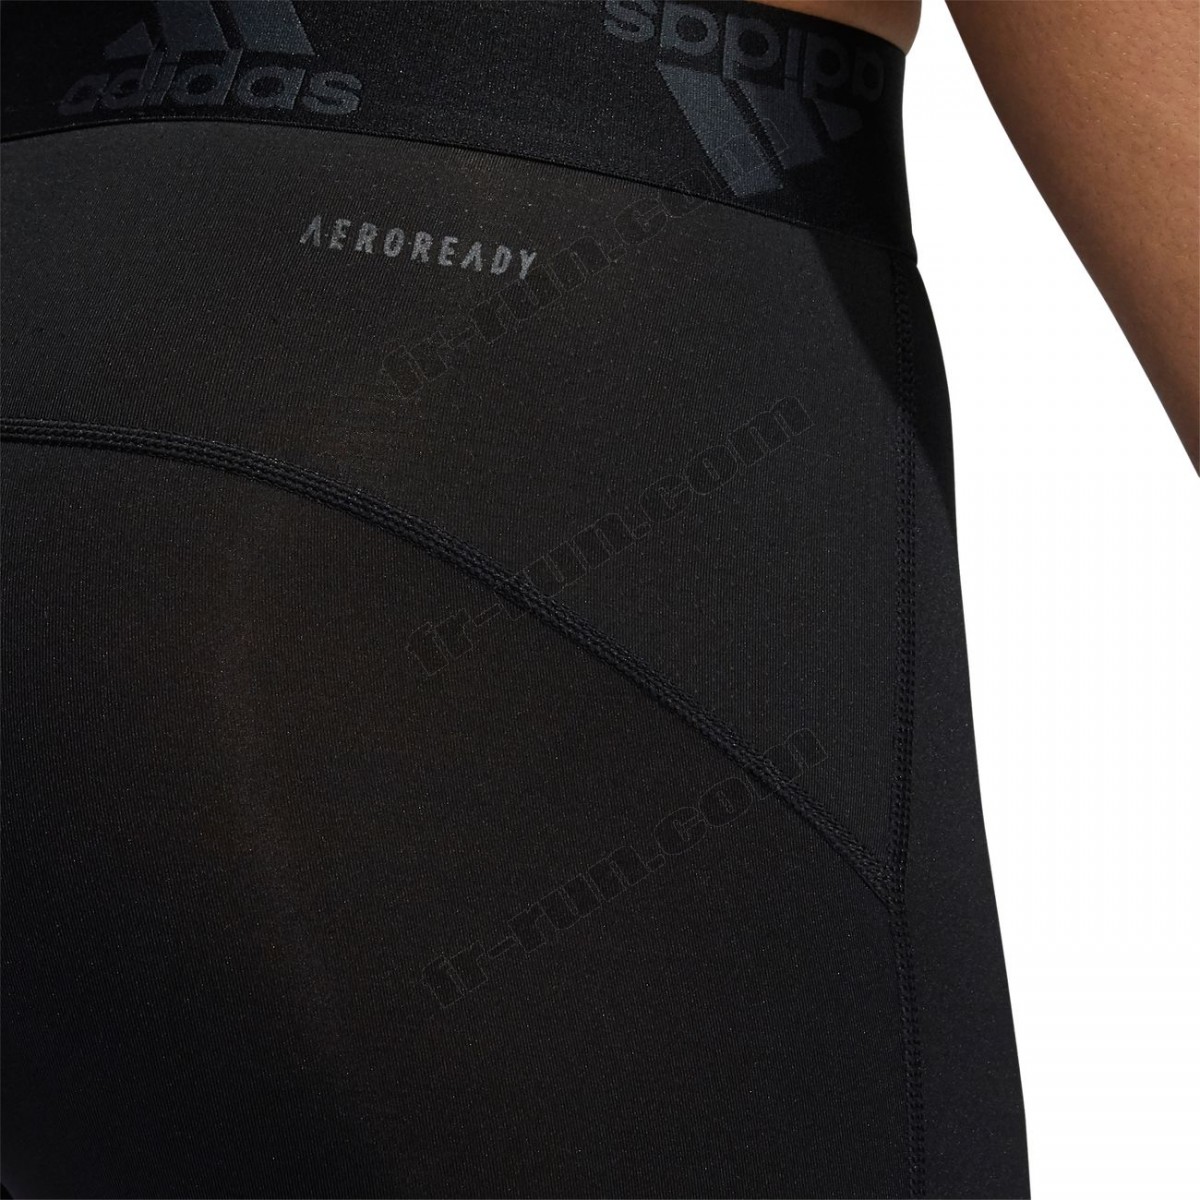 Adidas/Course à pied homme ADIDAS Cycliste adidas Techfit ◇◇◇ Pas Cher Du Tout - -21